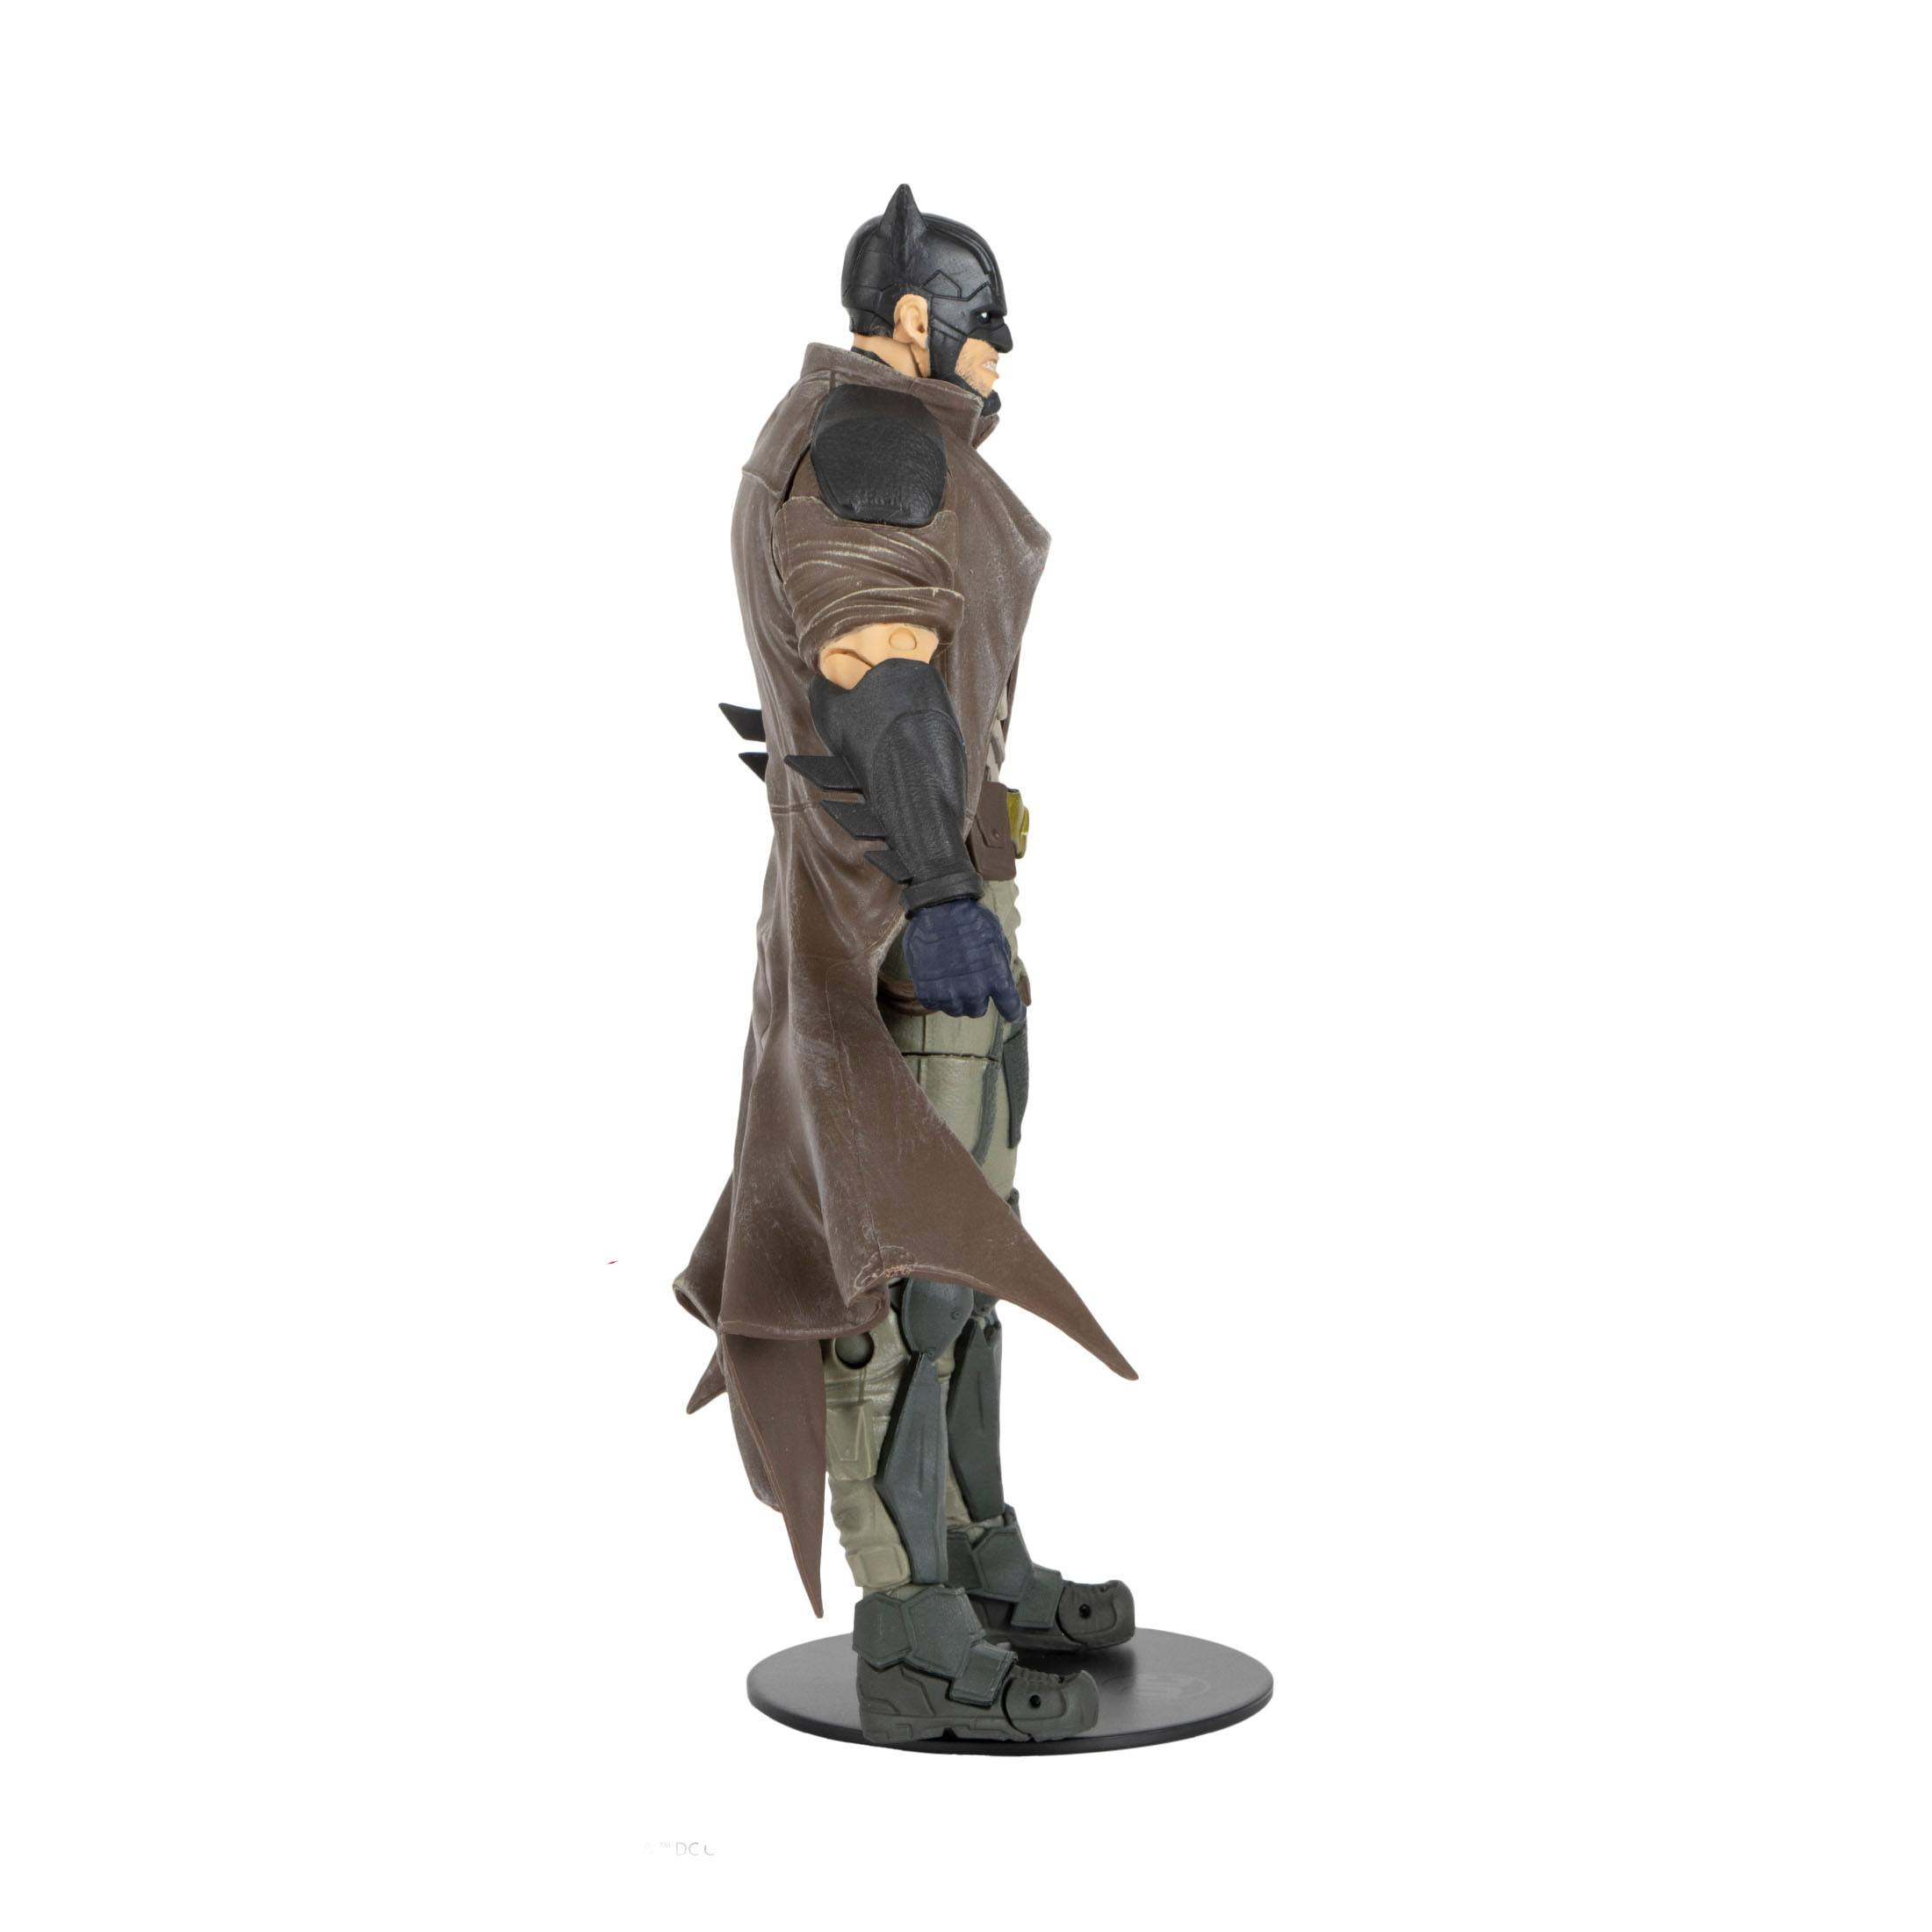 Figur: cm 18 TOYS Multiverse DC Action Actionfigur Dark Batman Detective MCFARLANE